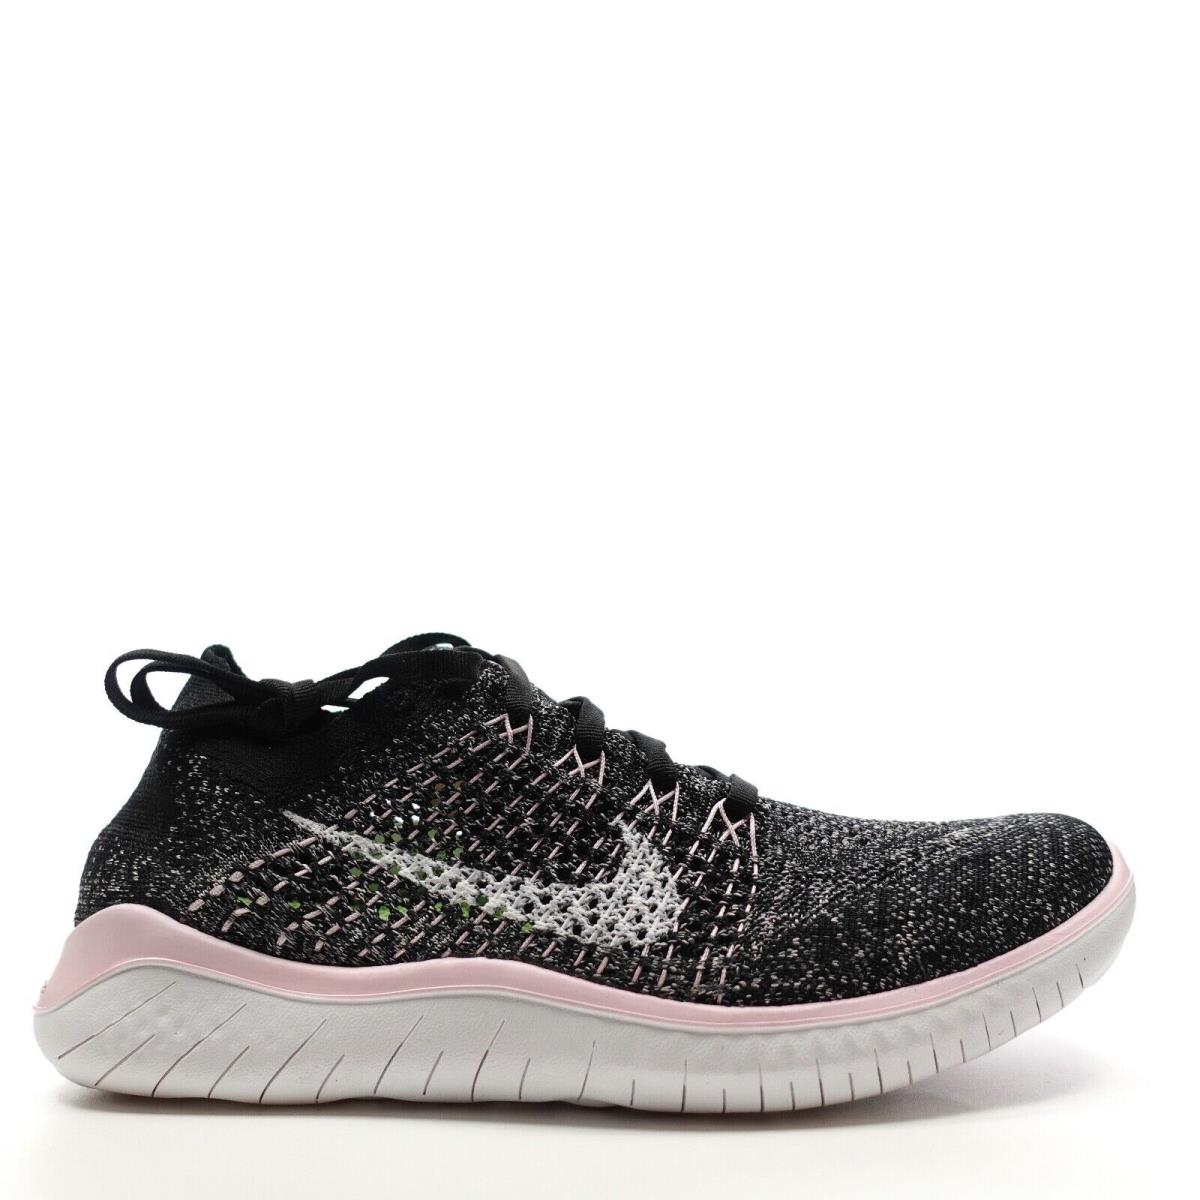 Nike Free RN Flyknit 2018 Pink Foam Running Shoes 942839 007 Womens Size 7